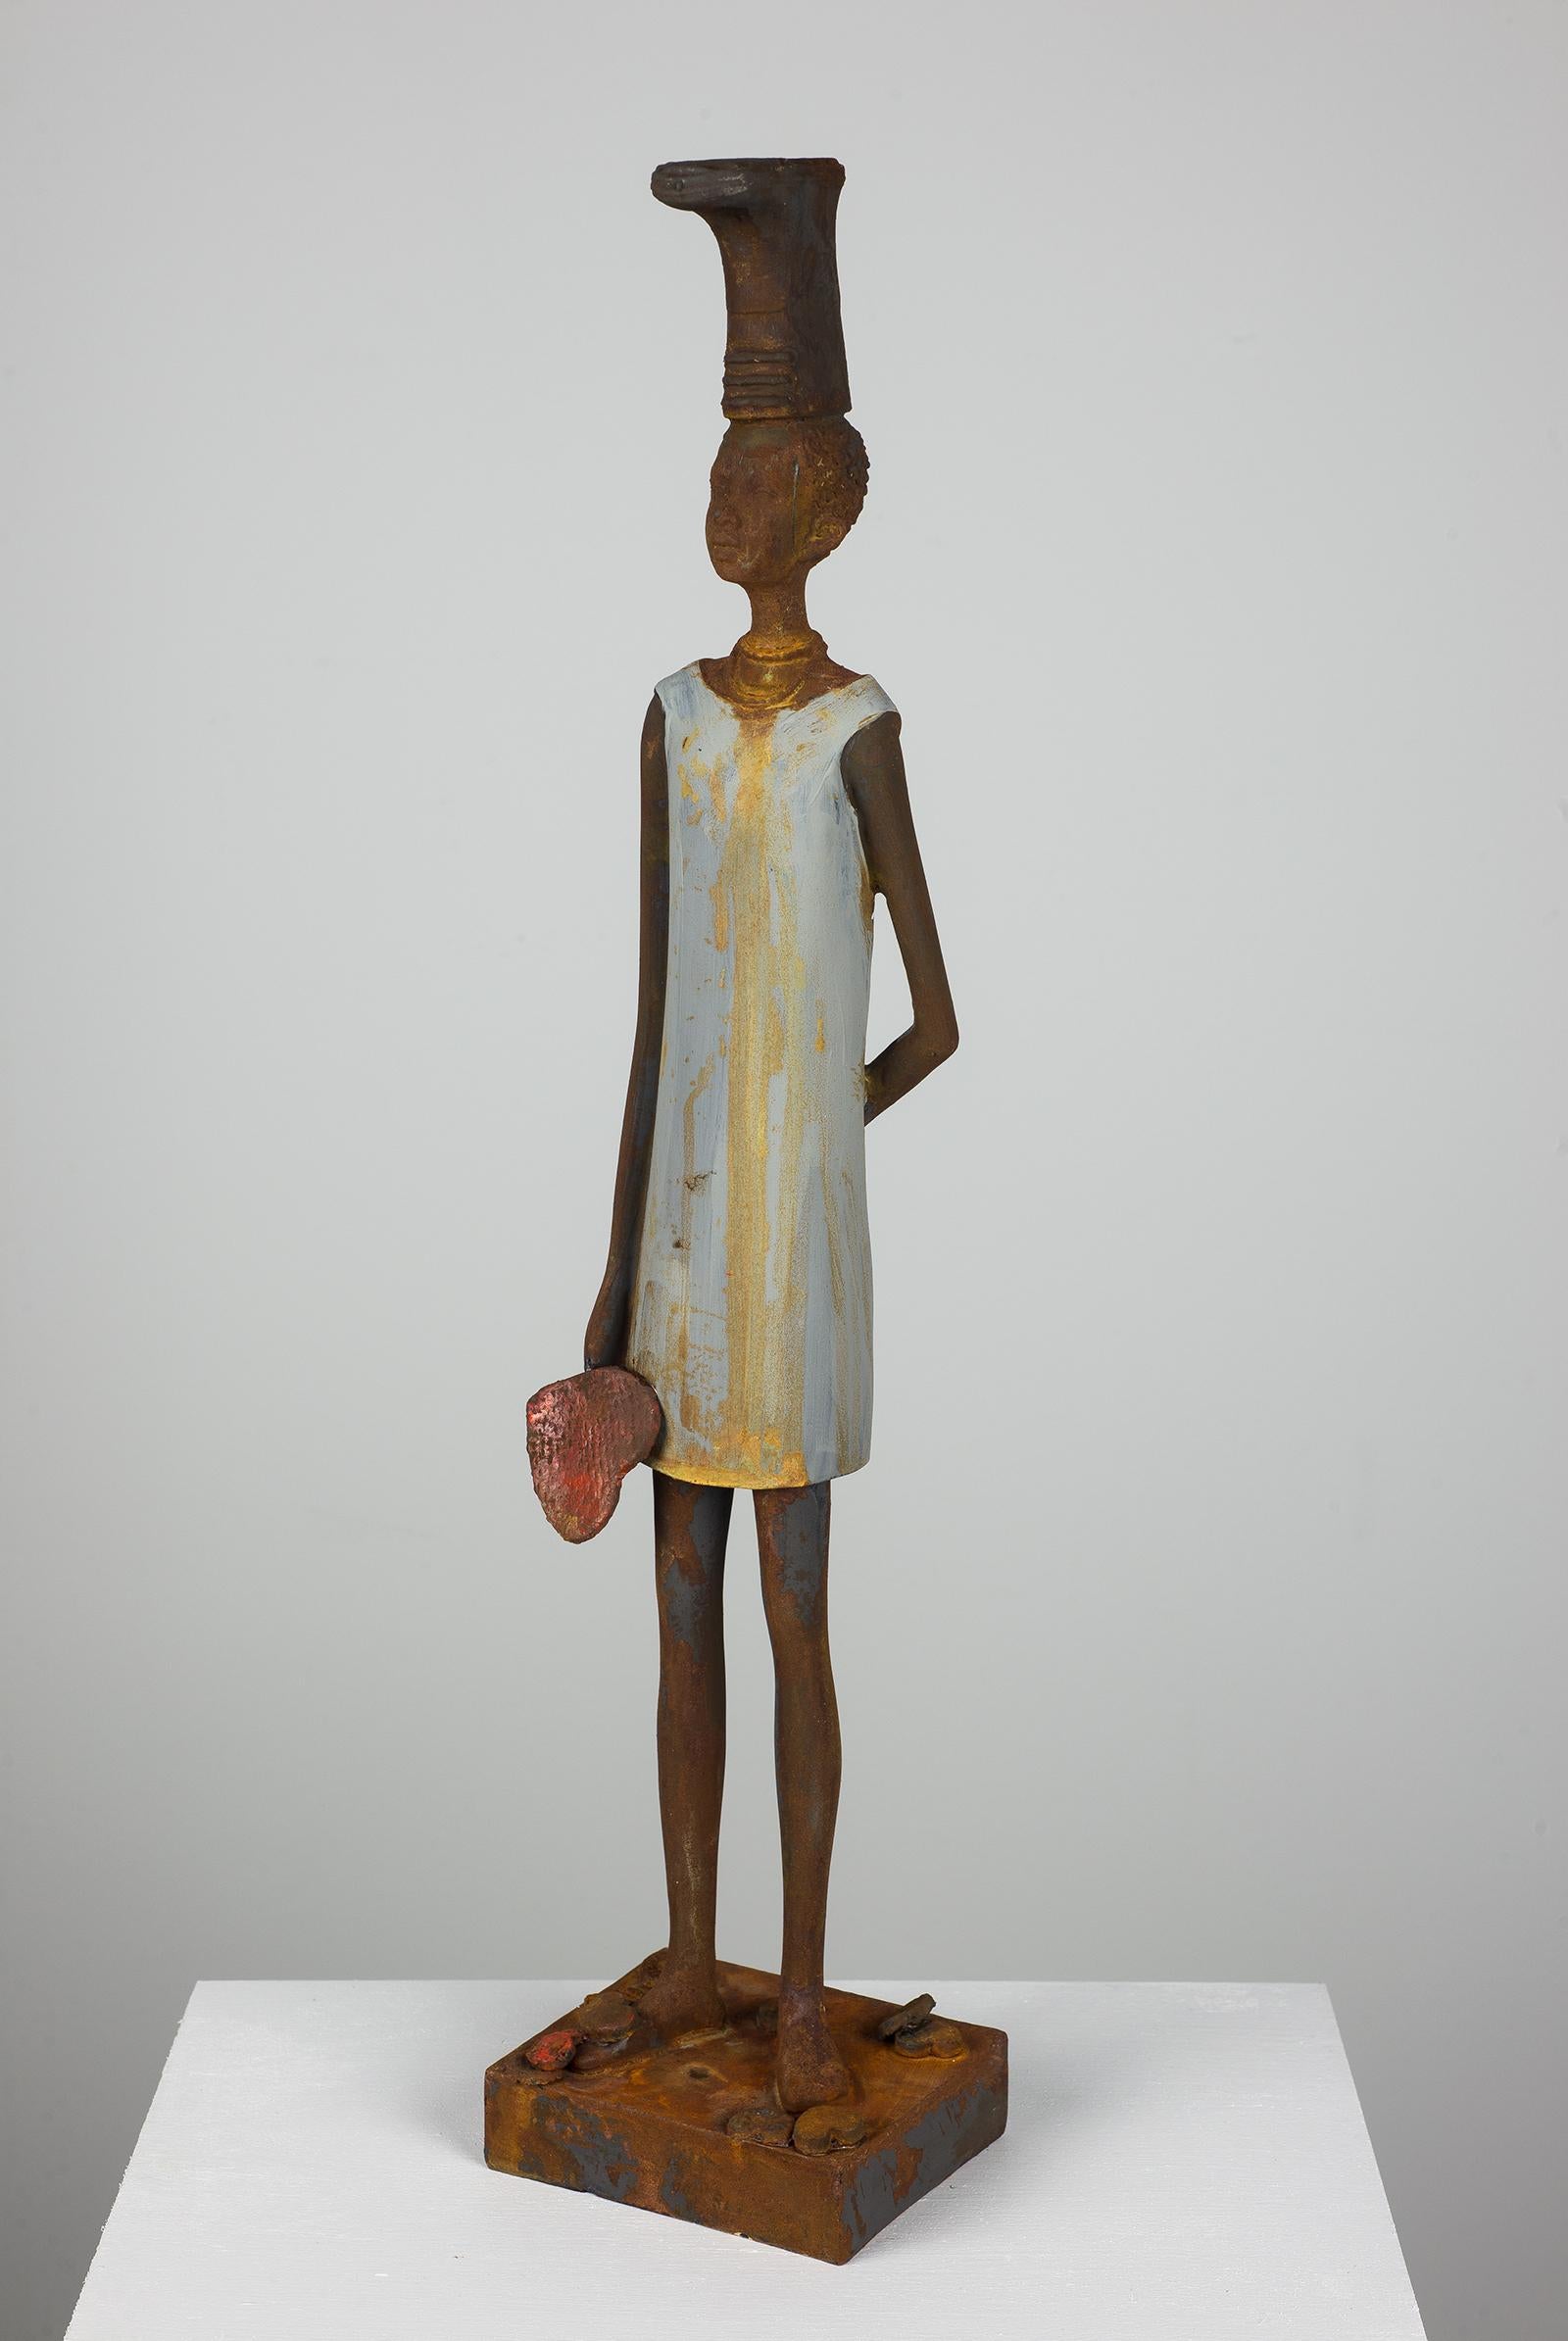 Julia Rivera Figurative Sculpture - Honest Hearts Produce Honest Action